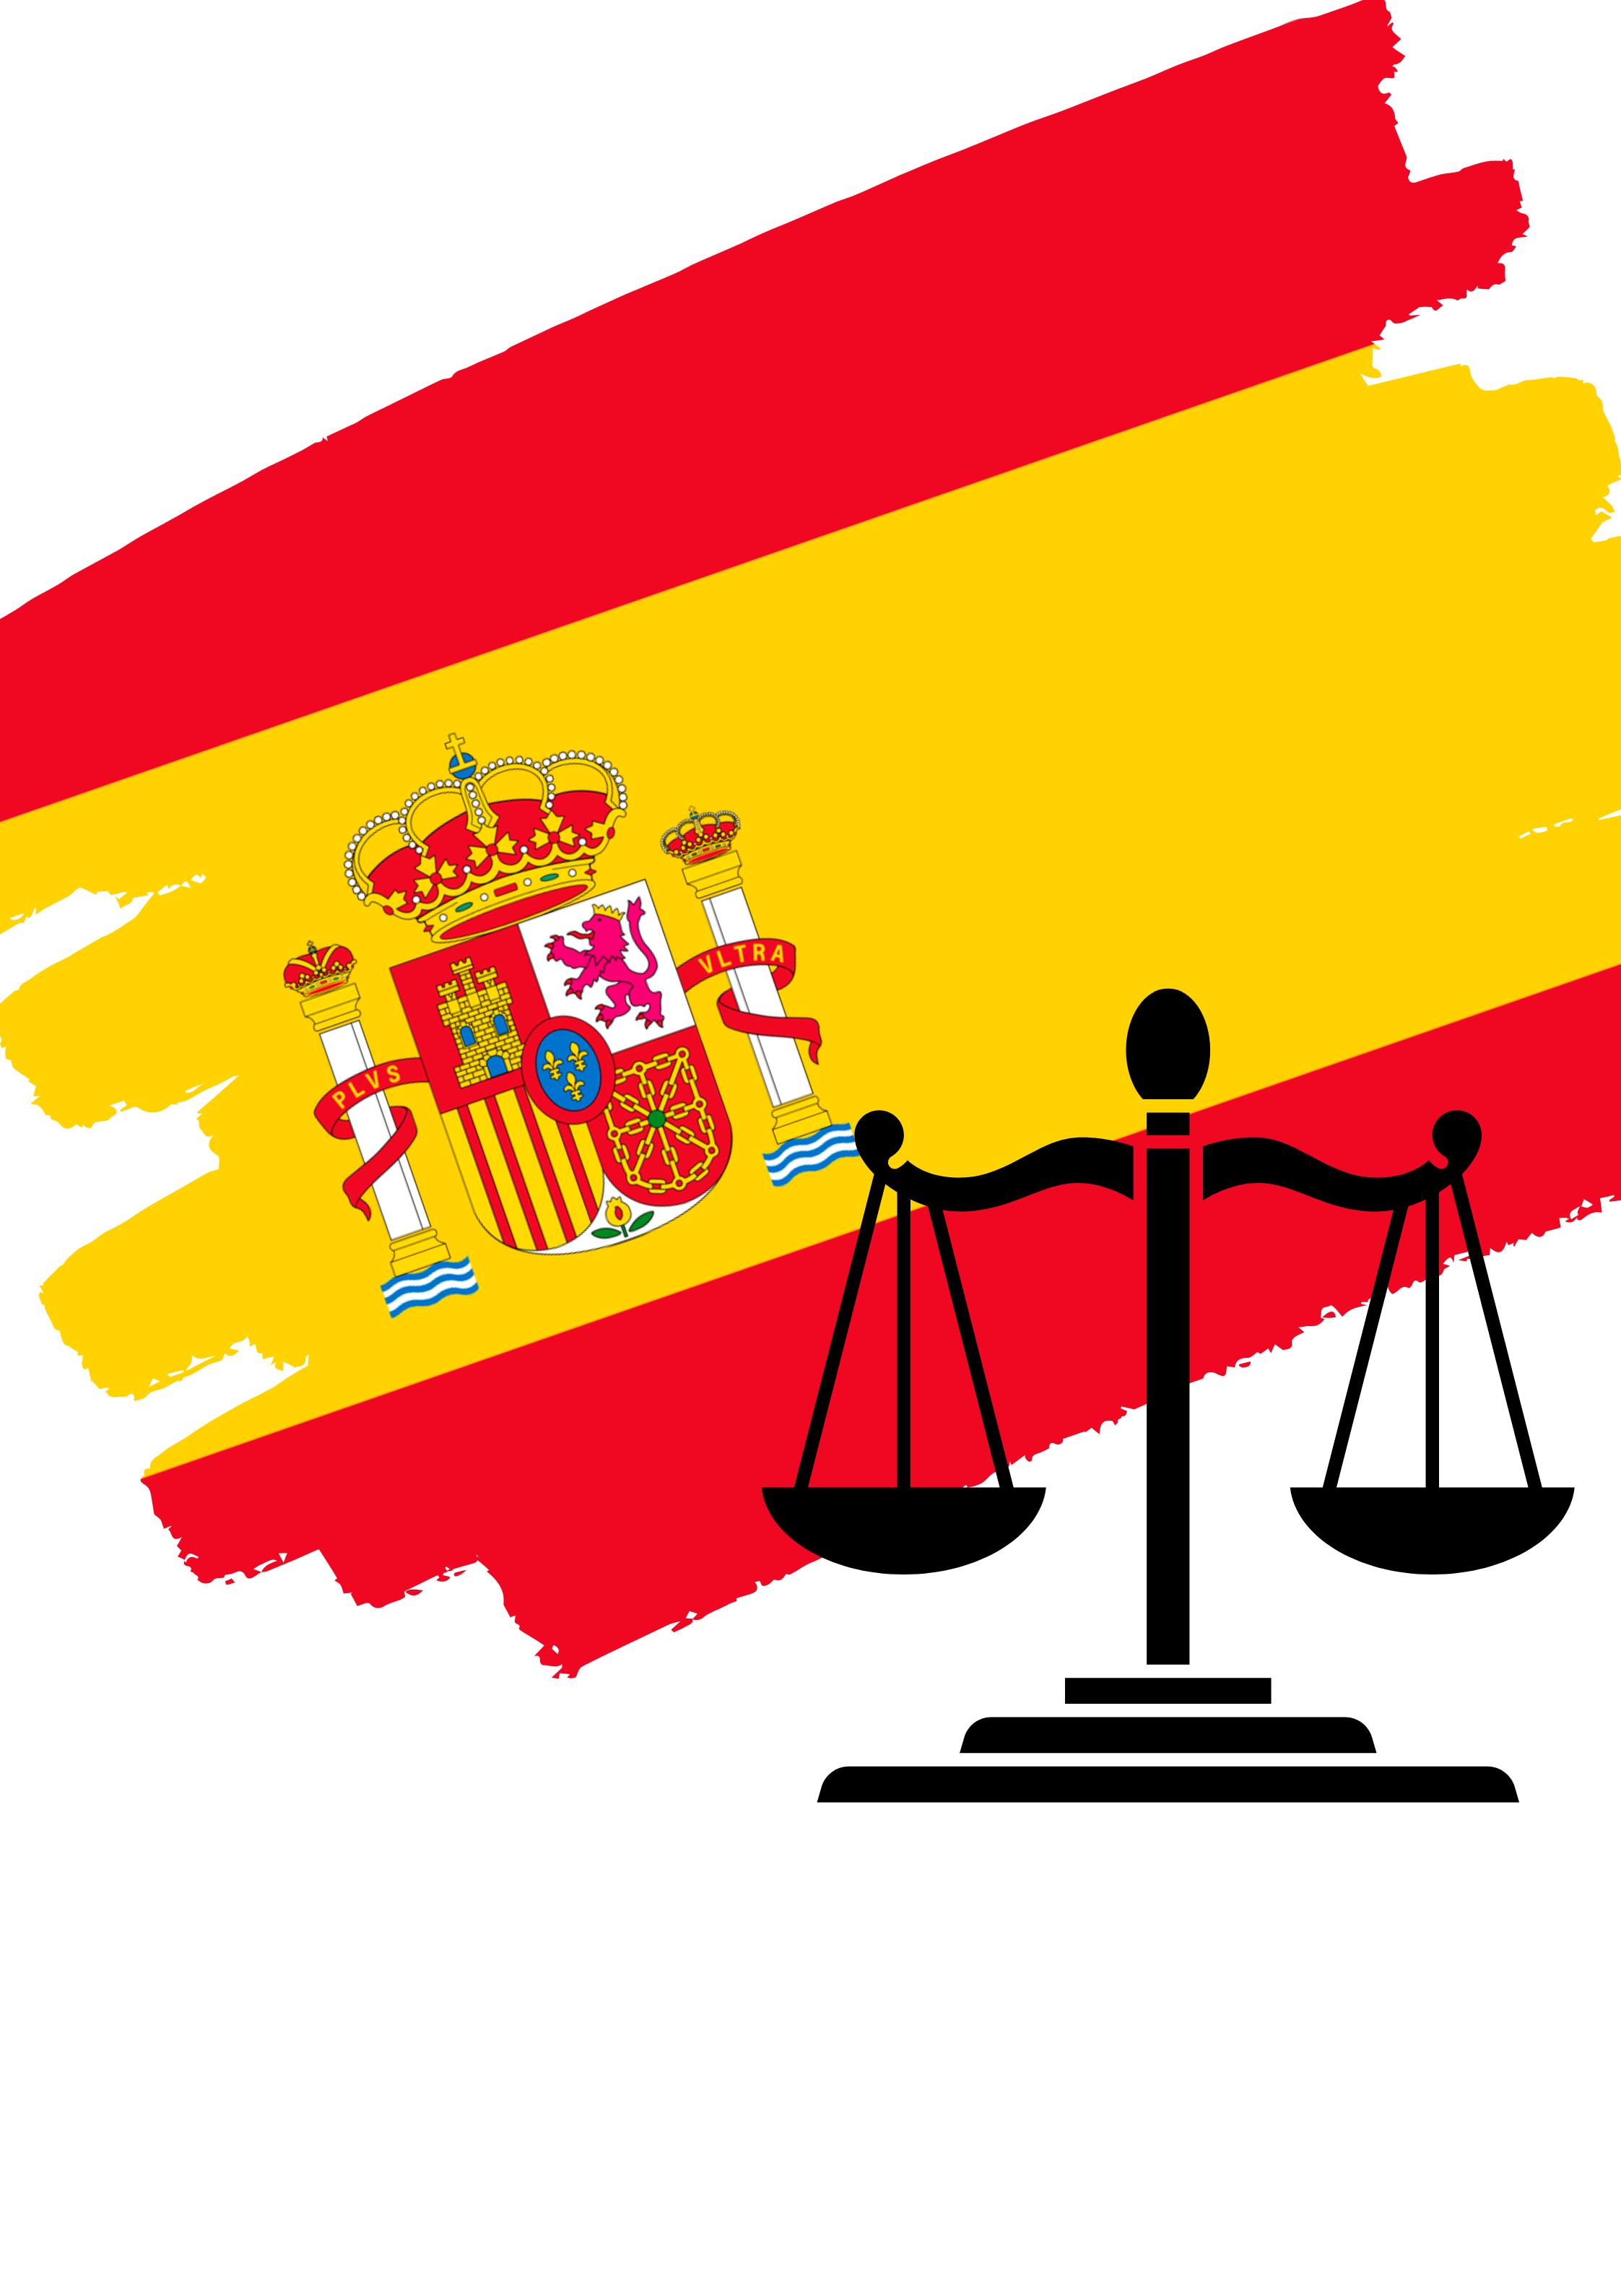 Spain Whistleblower (2)